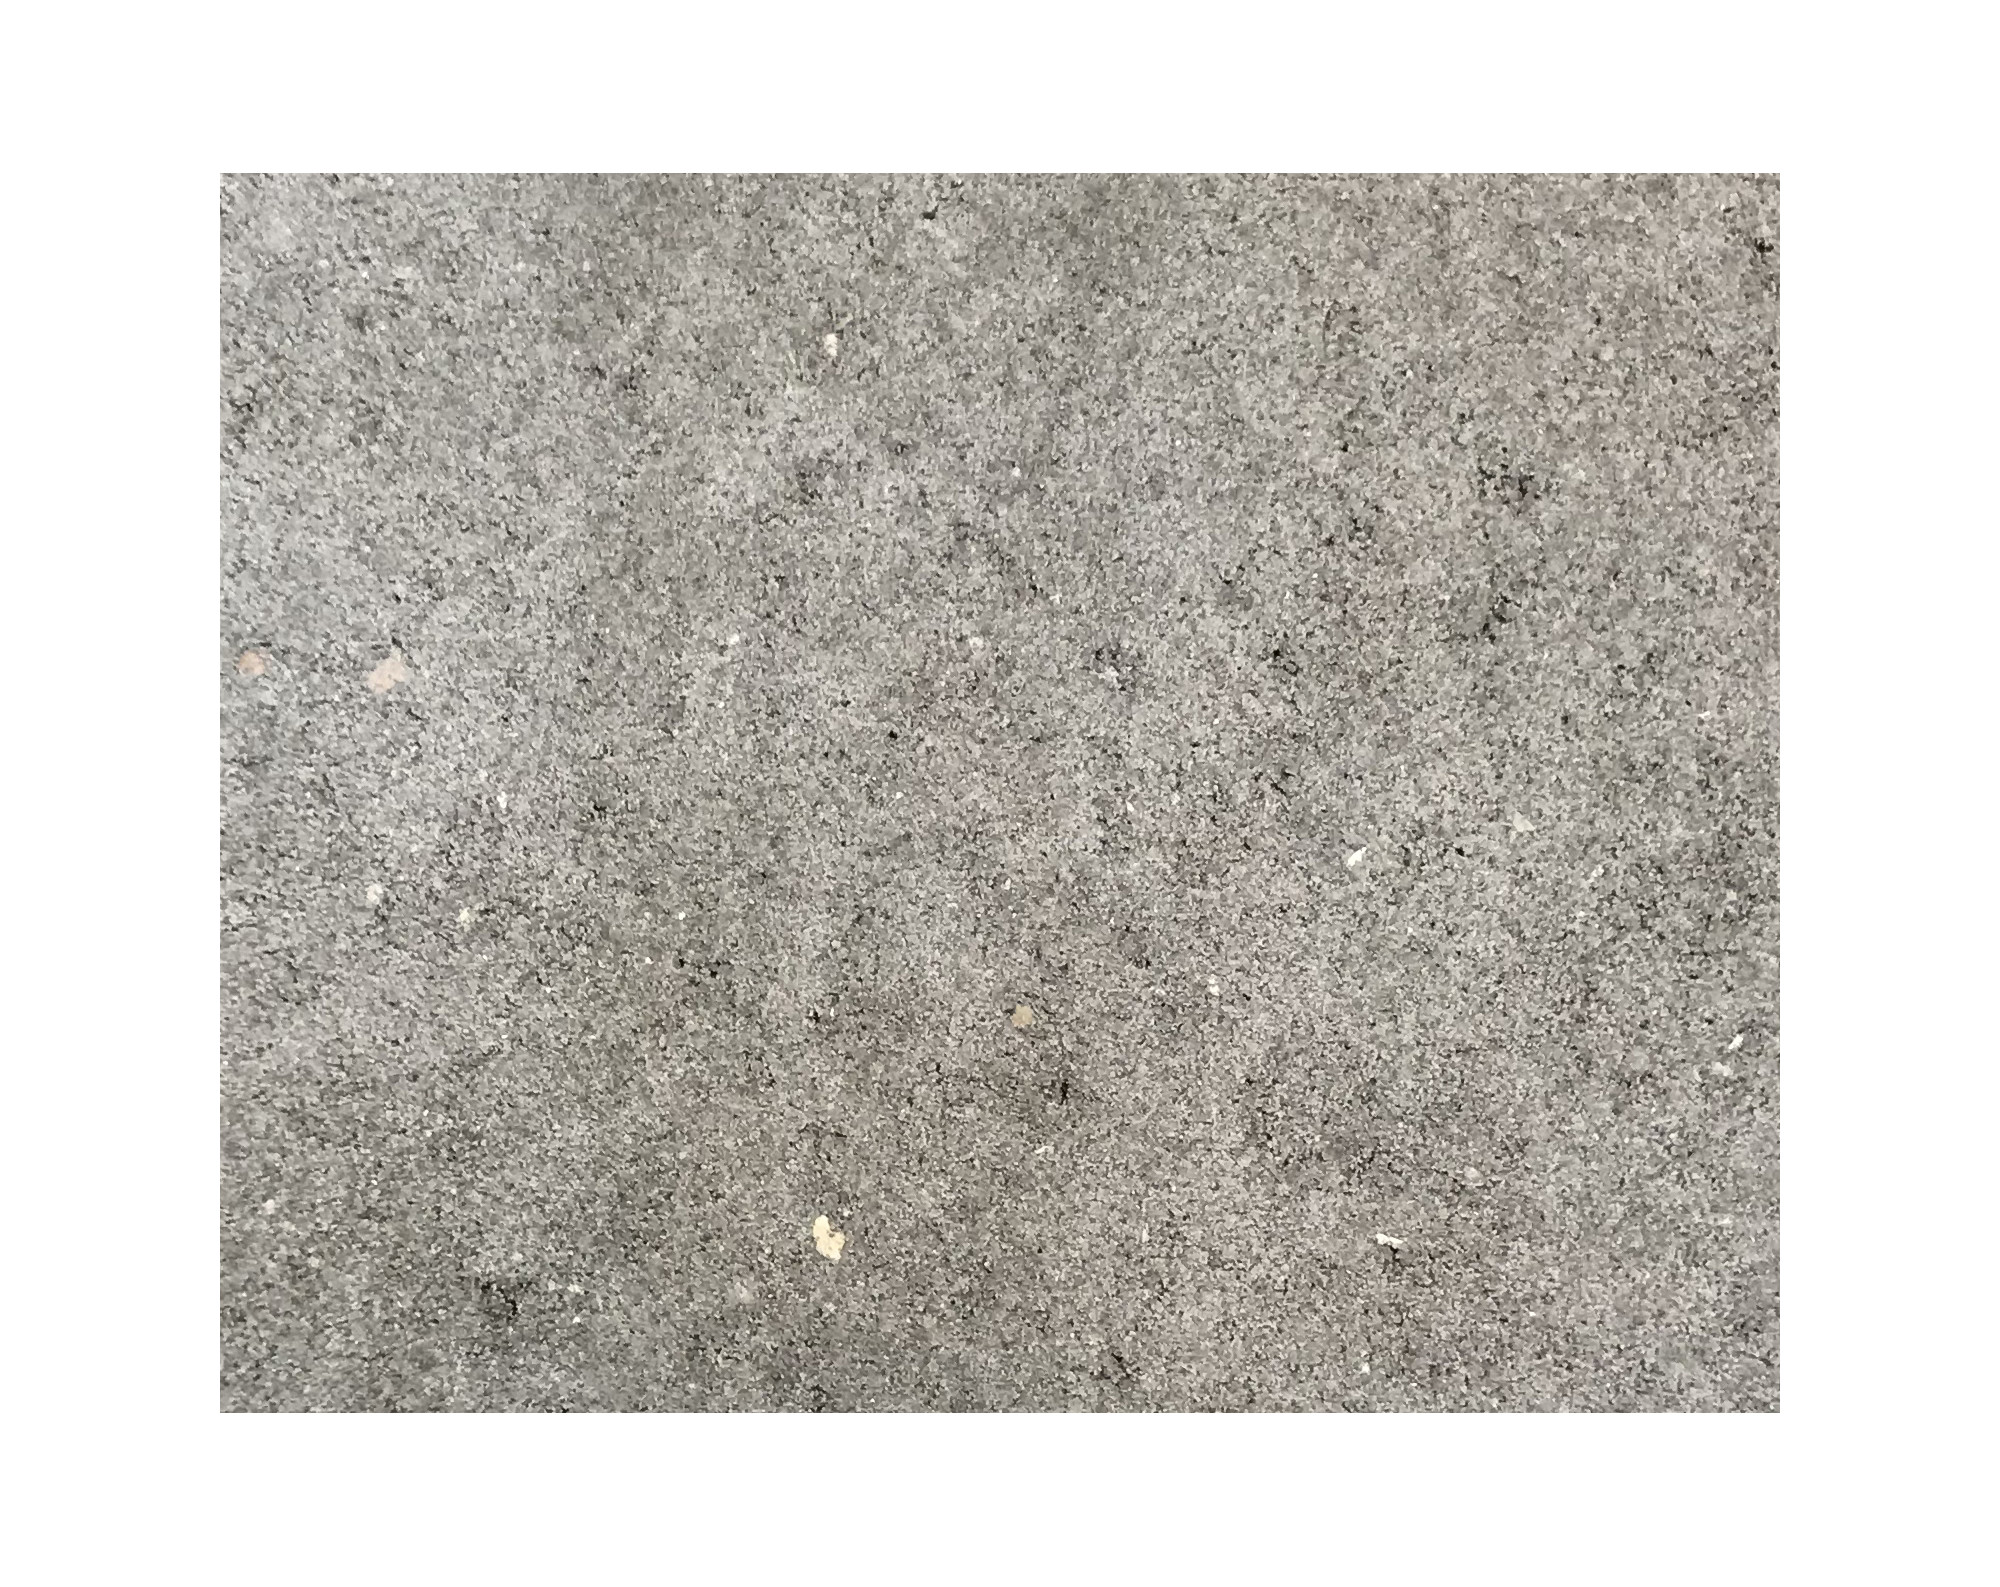 Harmo roc athenset, rustica-serie, ovaal d:5,00mx9,00m, grijs, beton